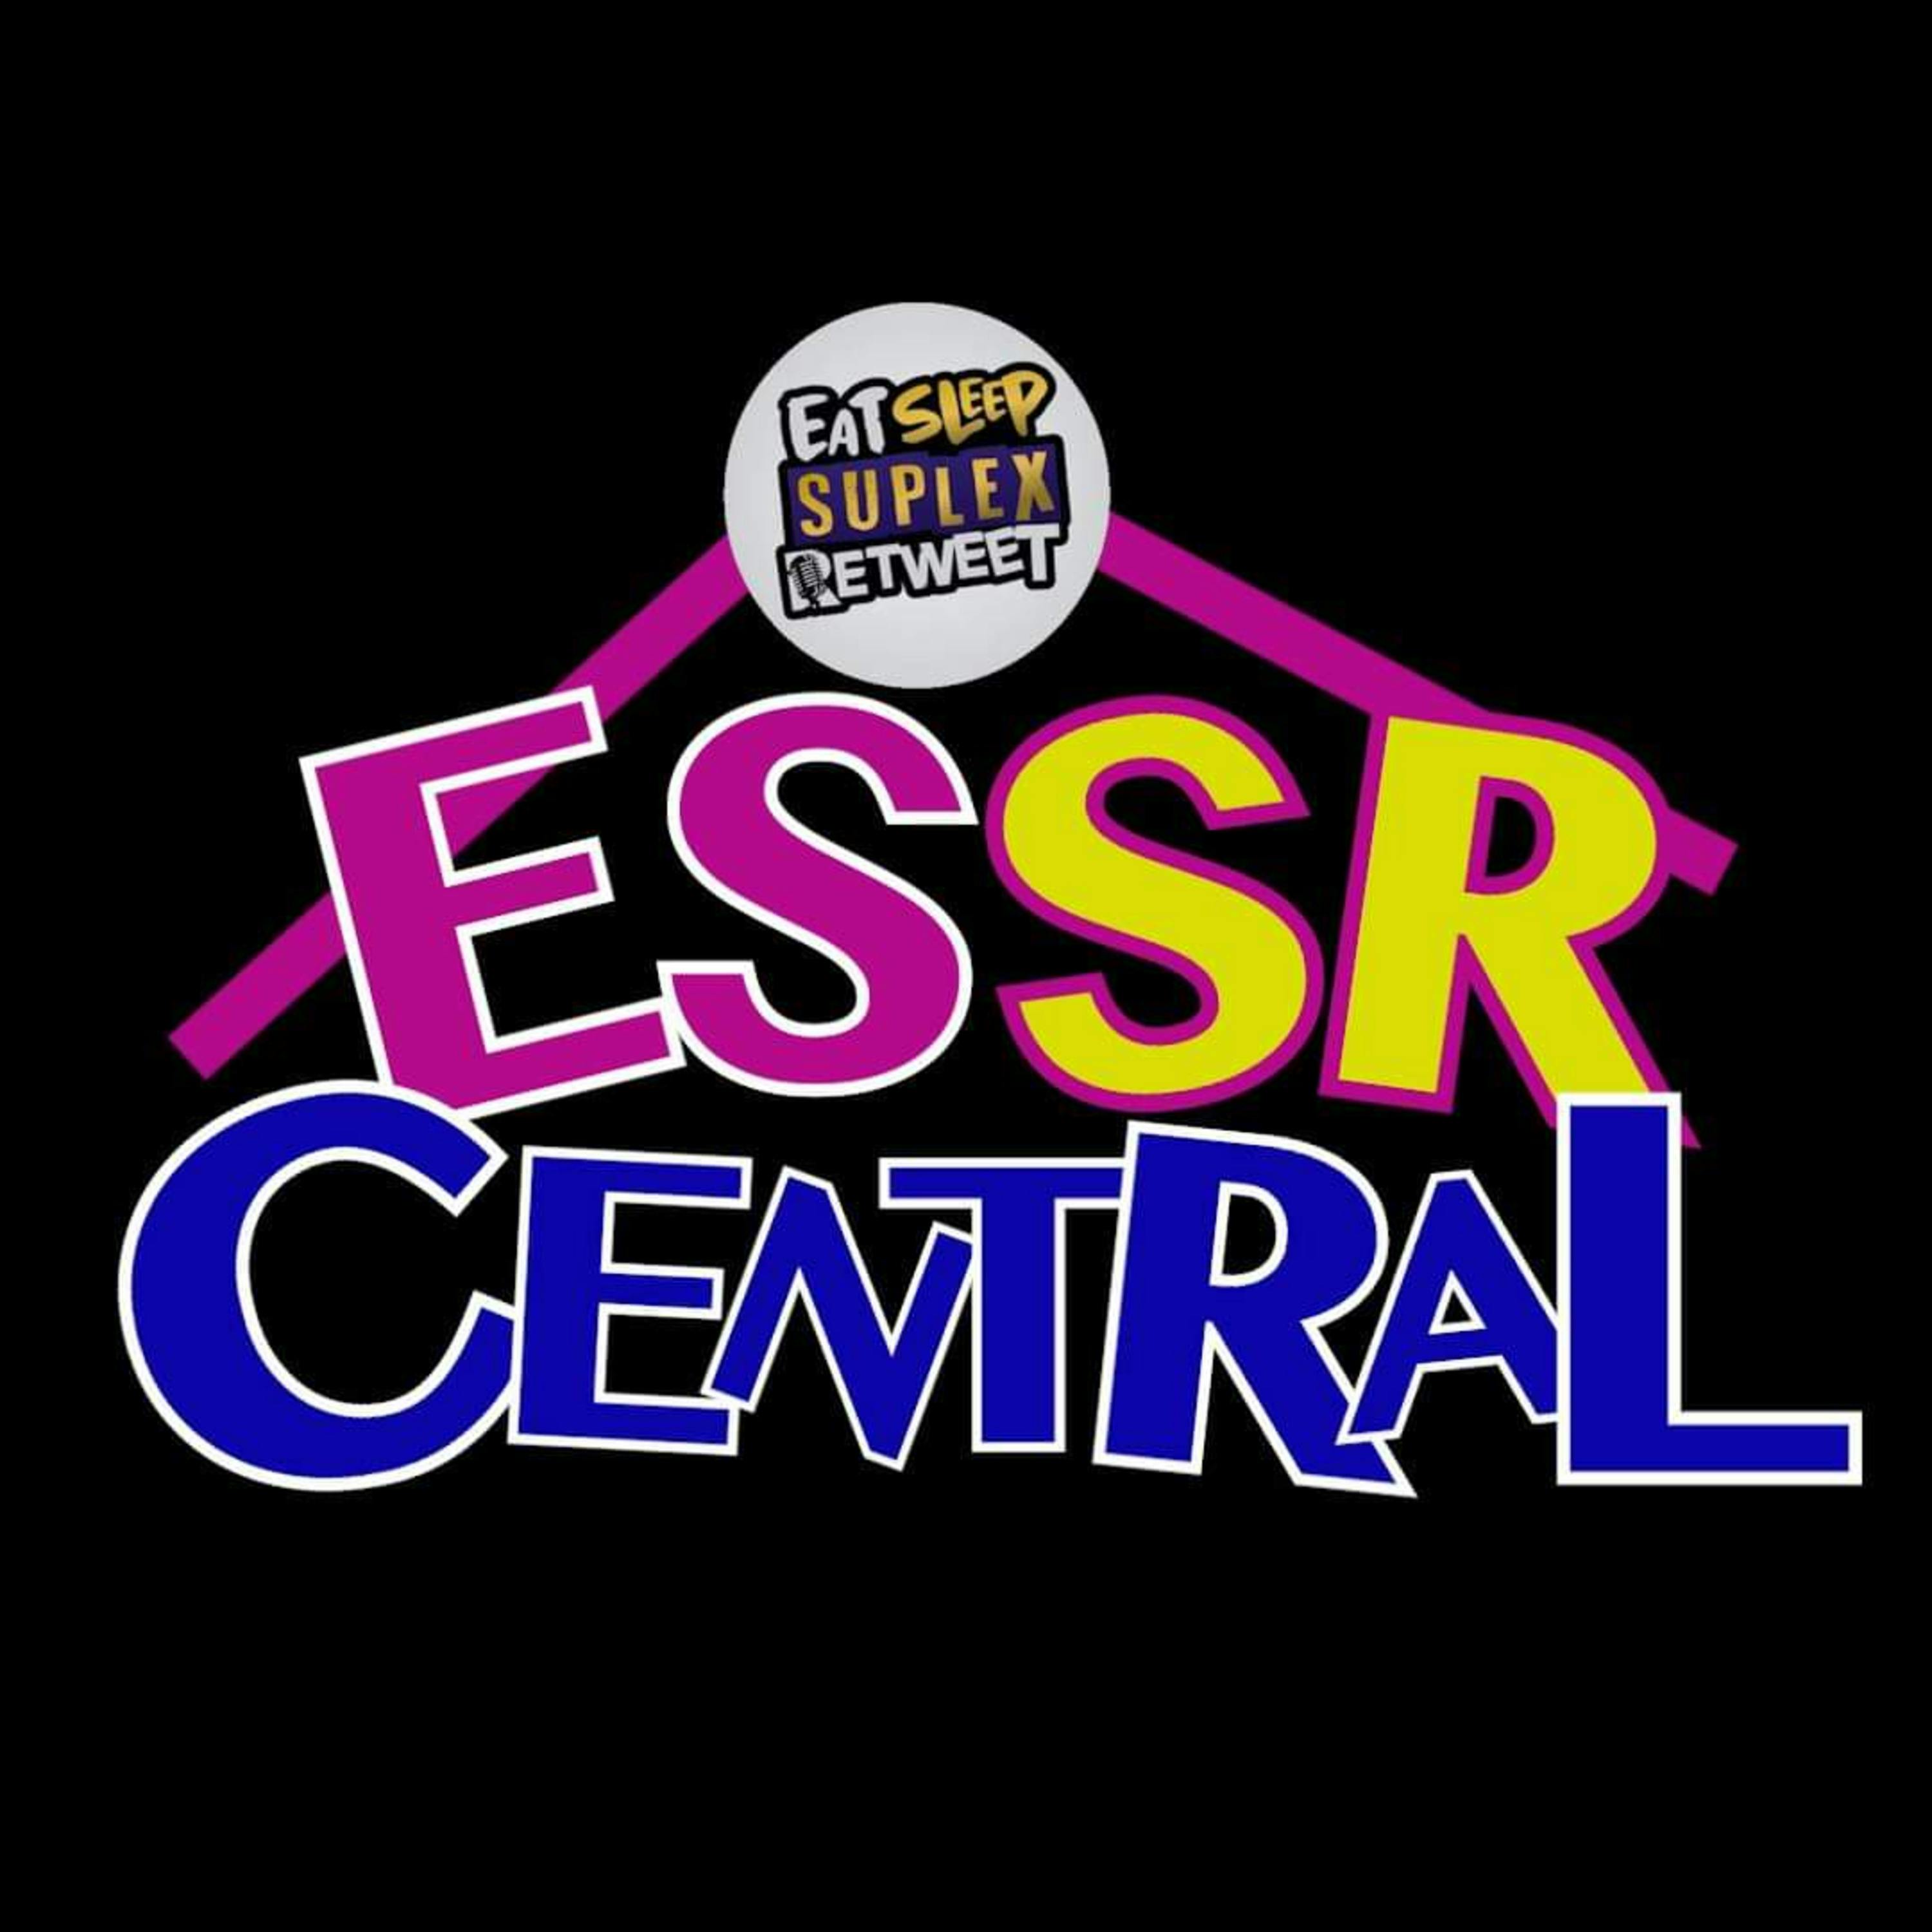 ESSR Central #103 - Elimination Chamber, No Surrender & Revolution